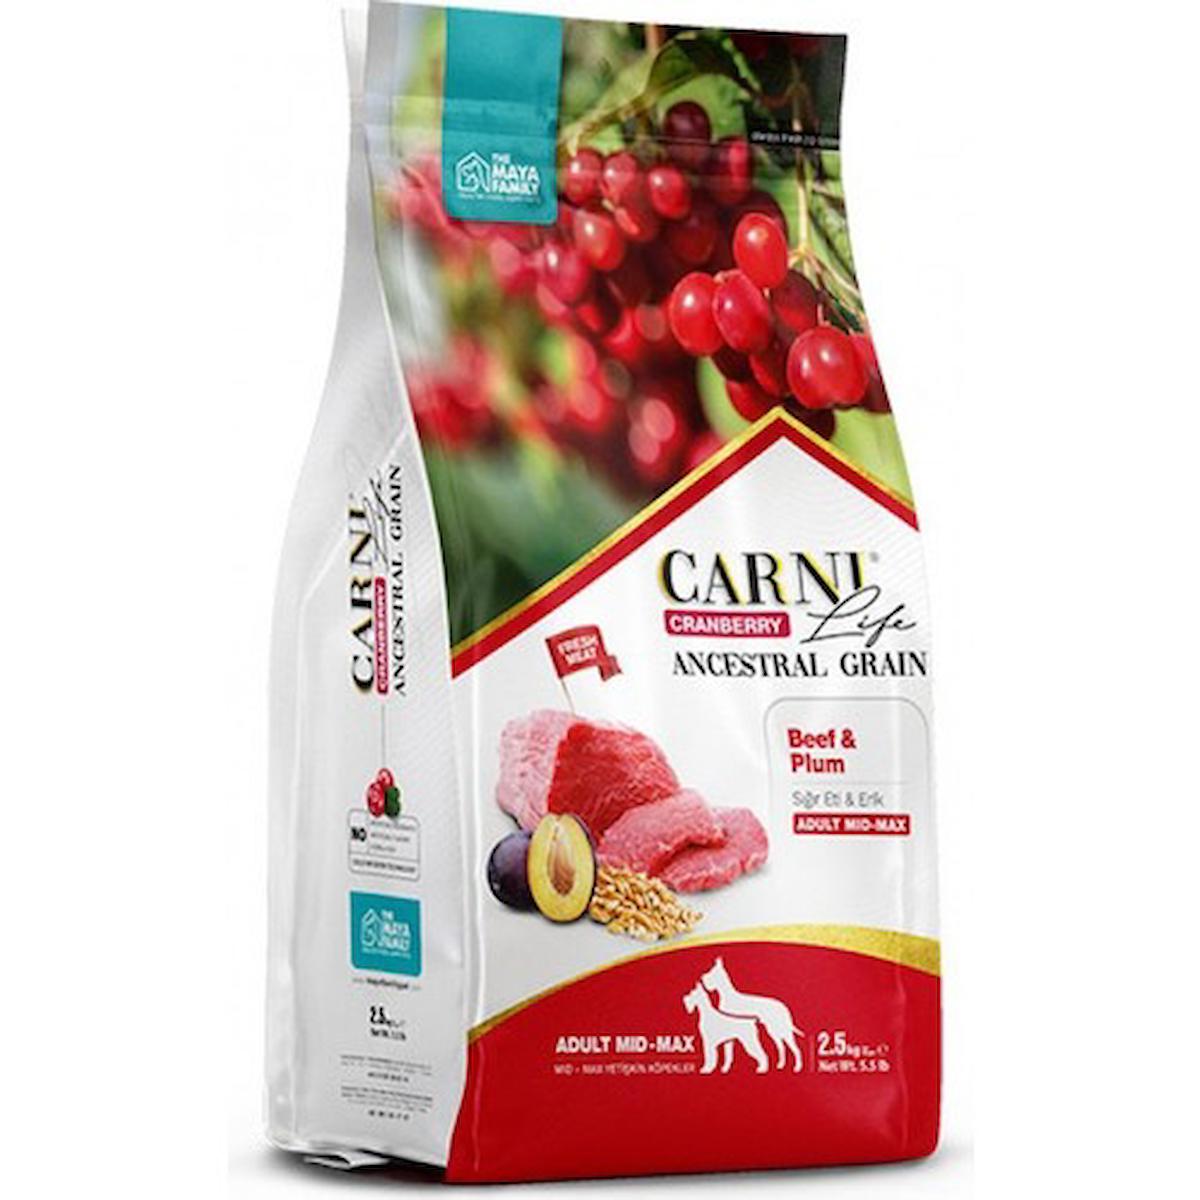 Carni Life Cranberry Erikli ve Sığır Etli Büyük ve Orta Irk Yetişkin Kuru Köpek Maması 12 kg